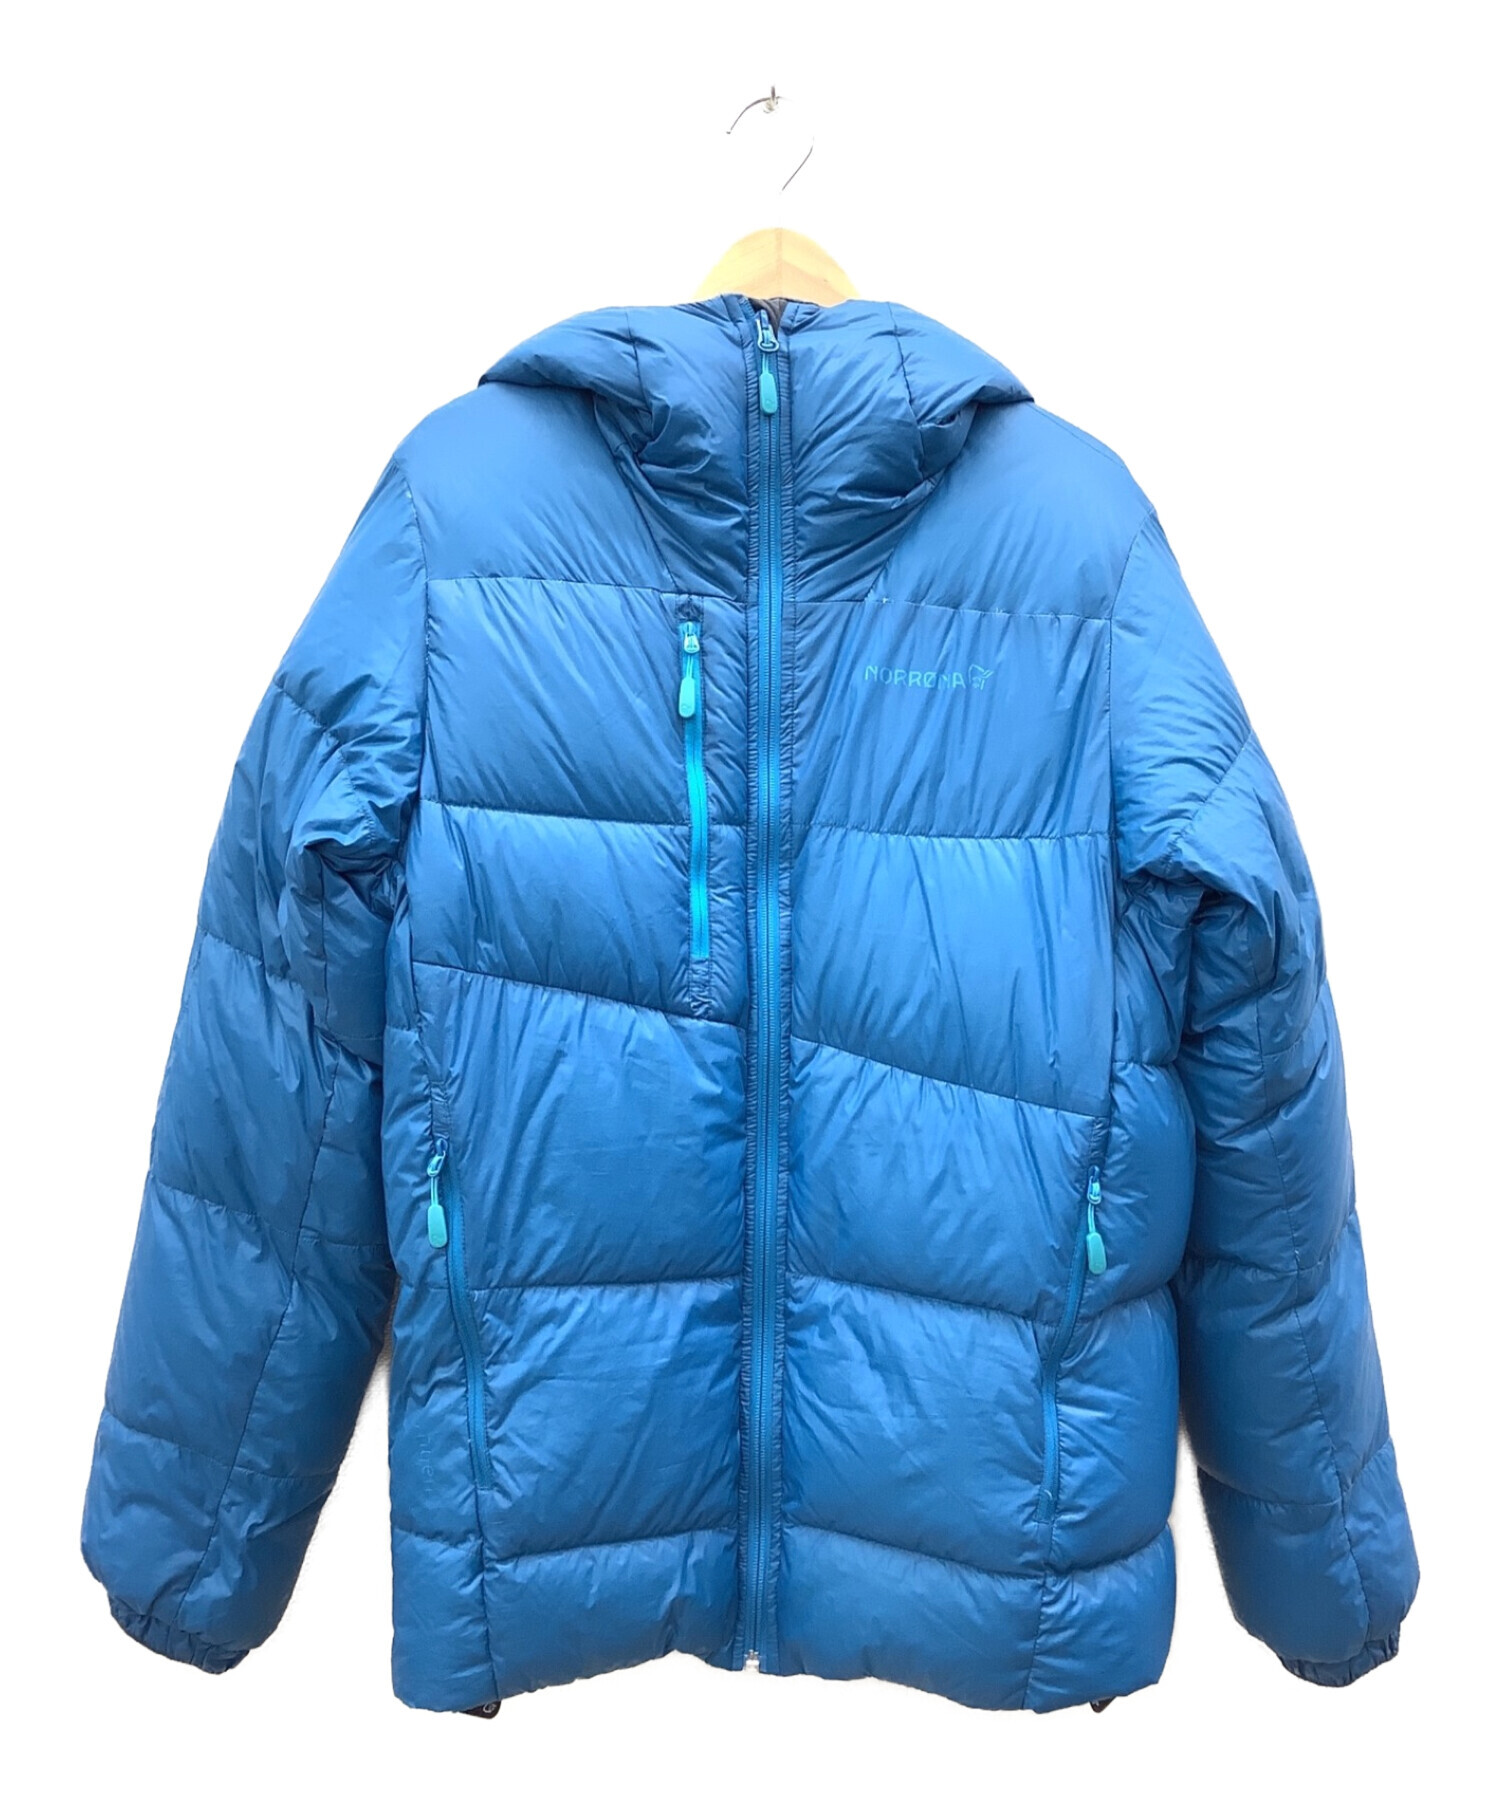 norrona (ノローナ) リンゲンダウン750ジャケット ブルー サイズ:S